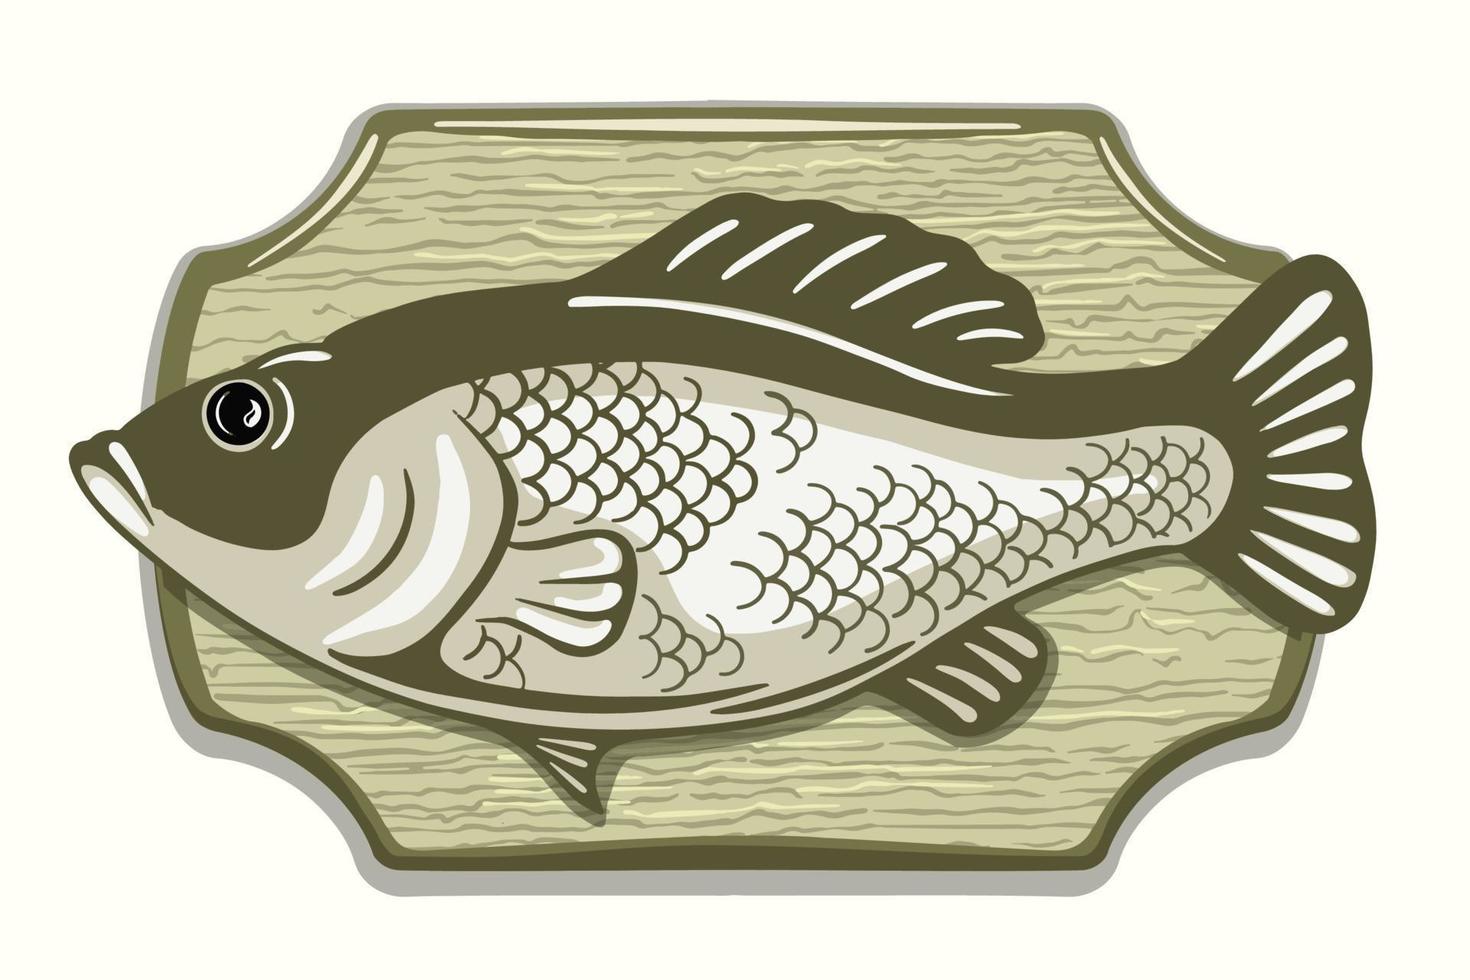 troféu de pesca recheado de peixe. decoração de interiores. estilo de esboço em cores. isolado no fundo branco. vetor. vetor